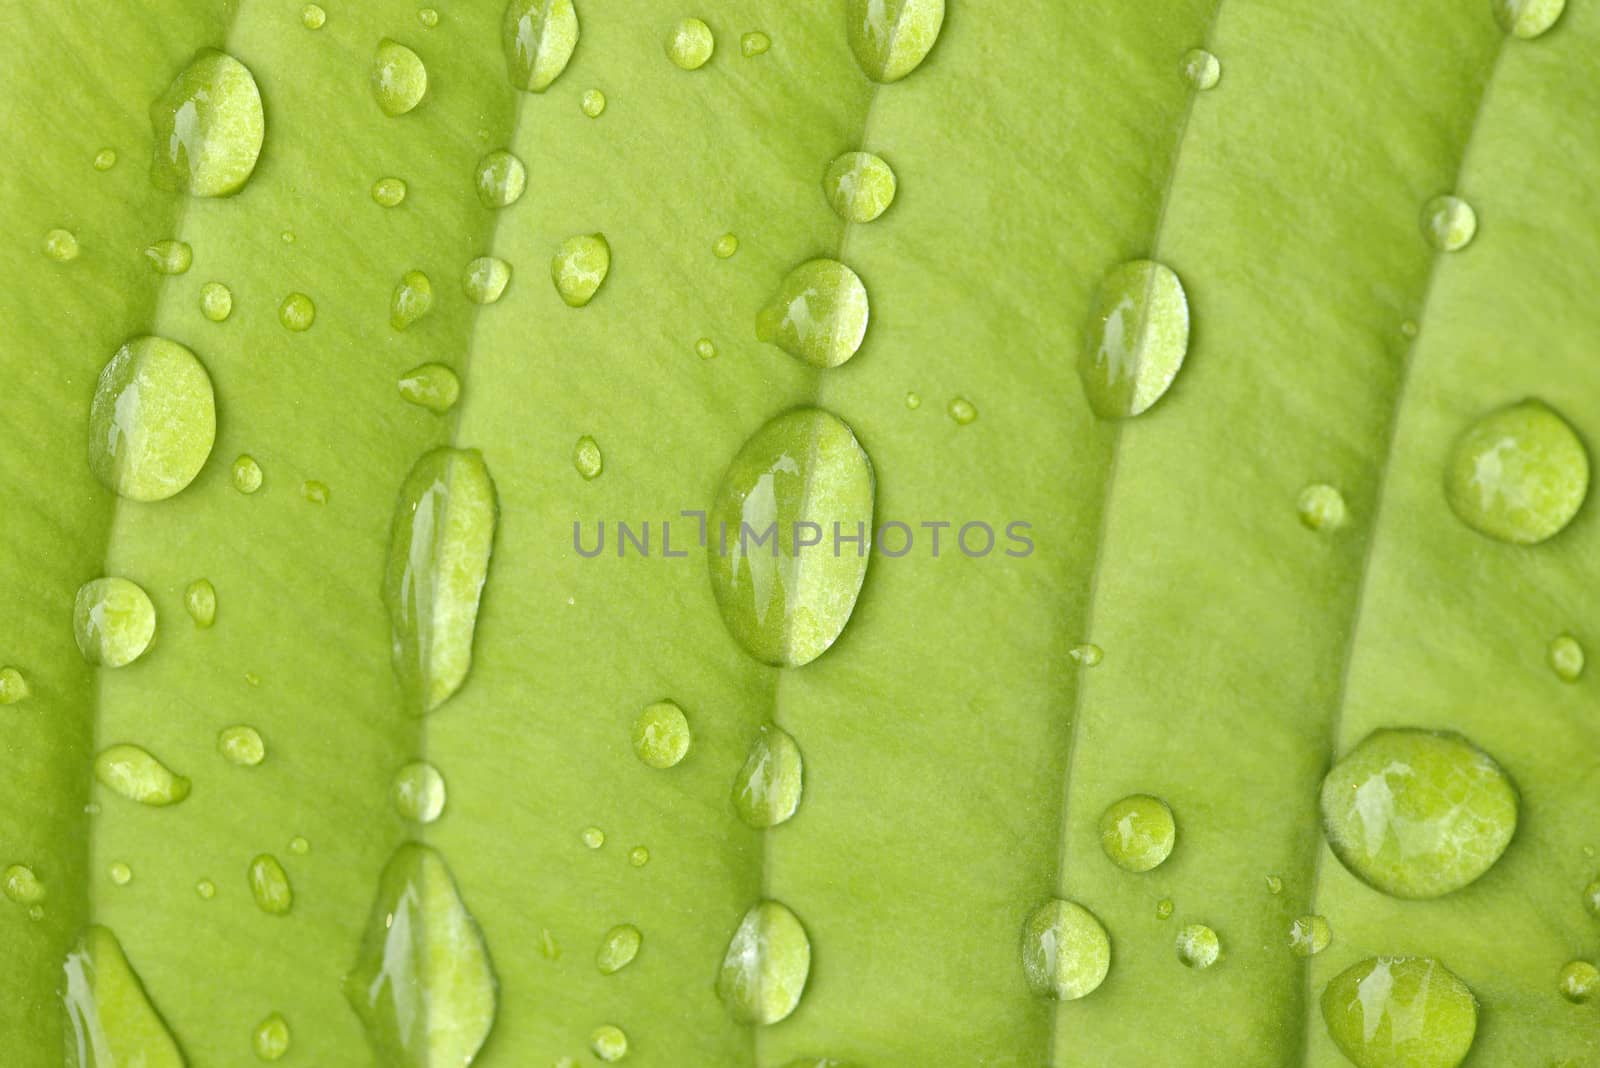 Hosta Leaf in the rain